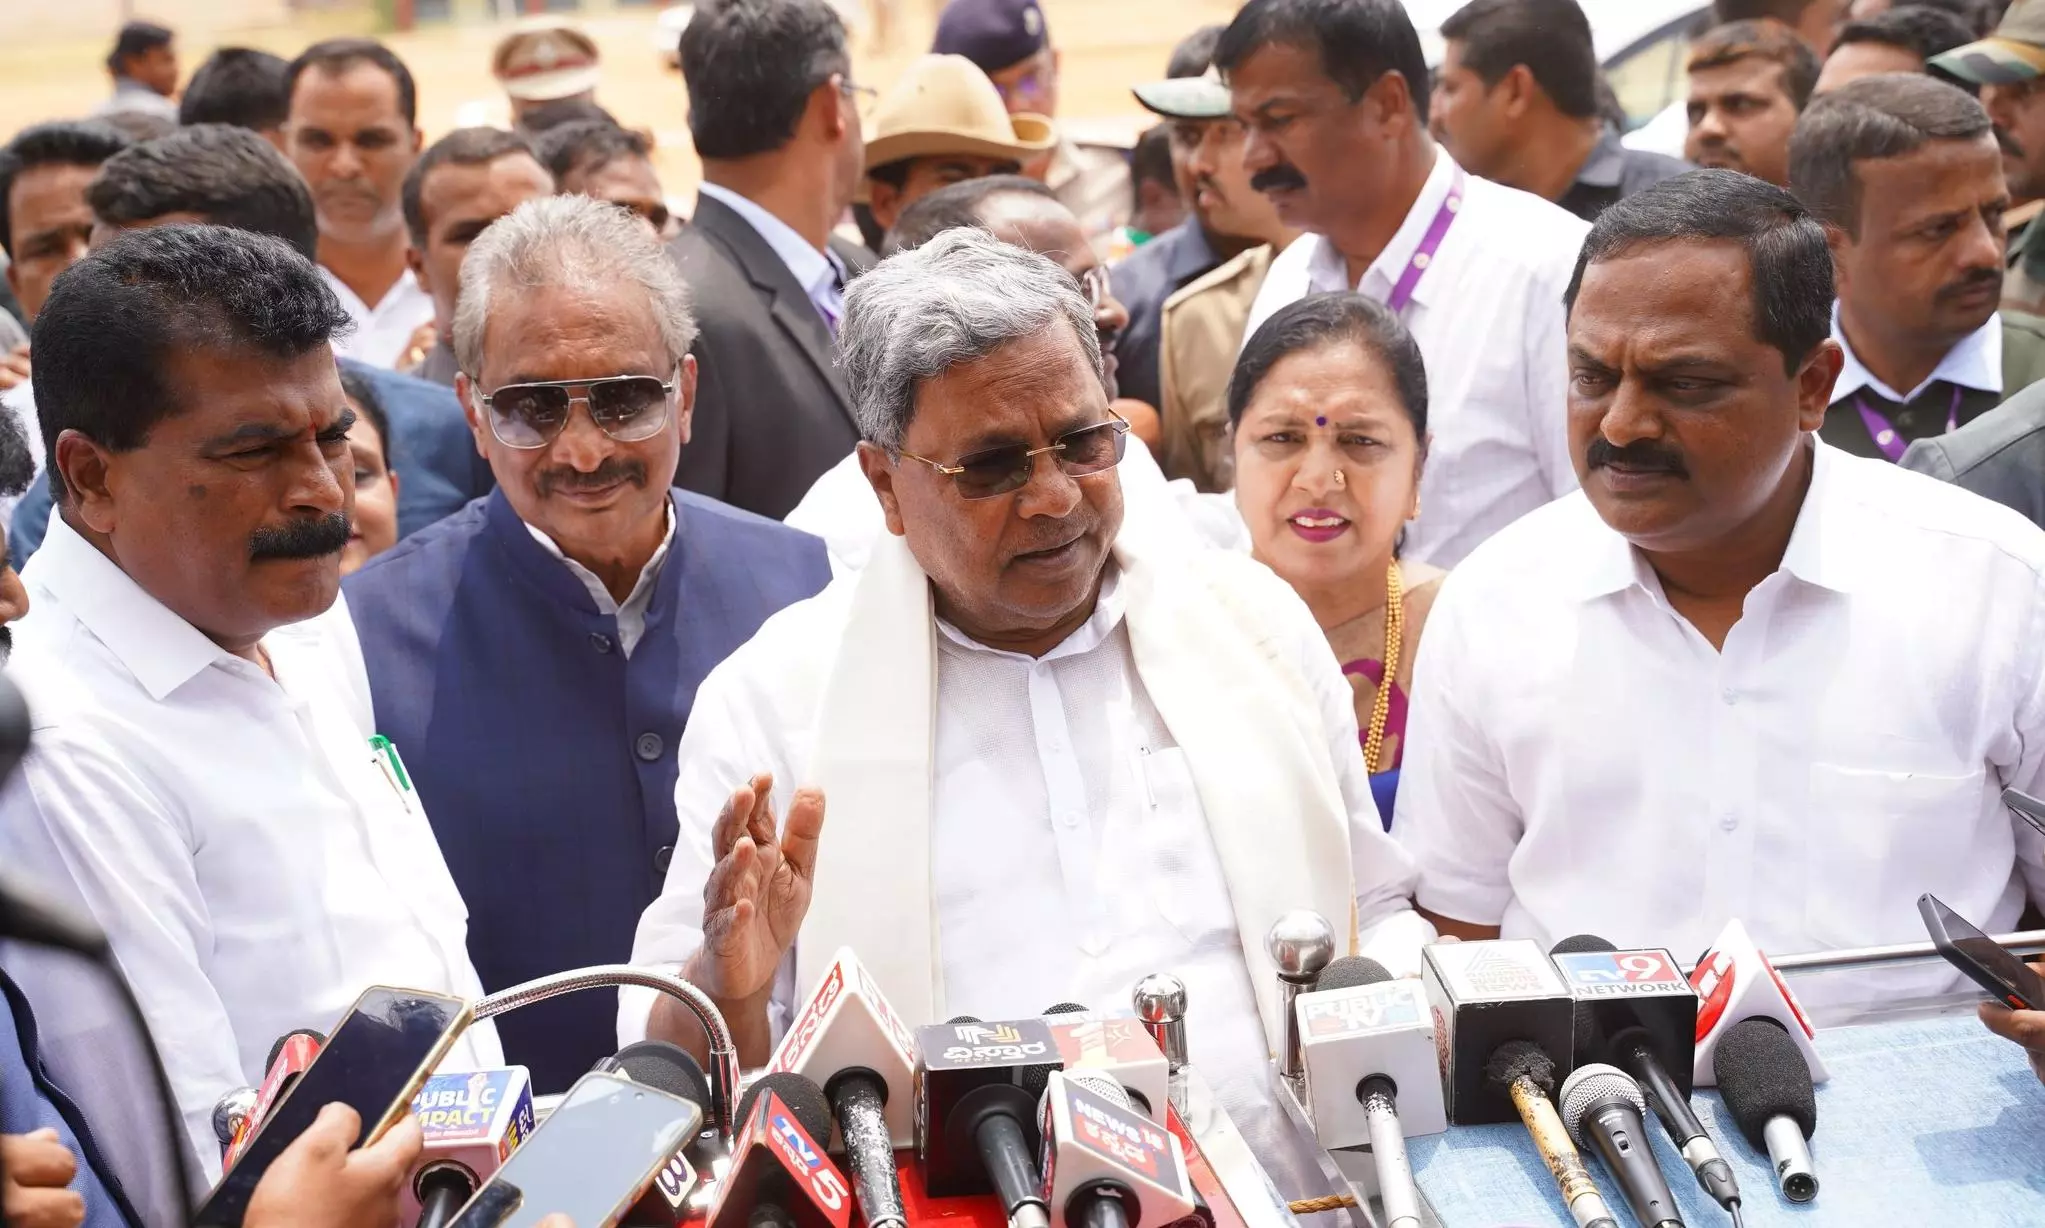 Karnataka Chief Minister Siddaramaiah at an event on Sunday (March 3), in Chikmagaluru. Image: X/@siddaramaiah